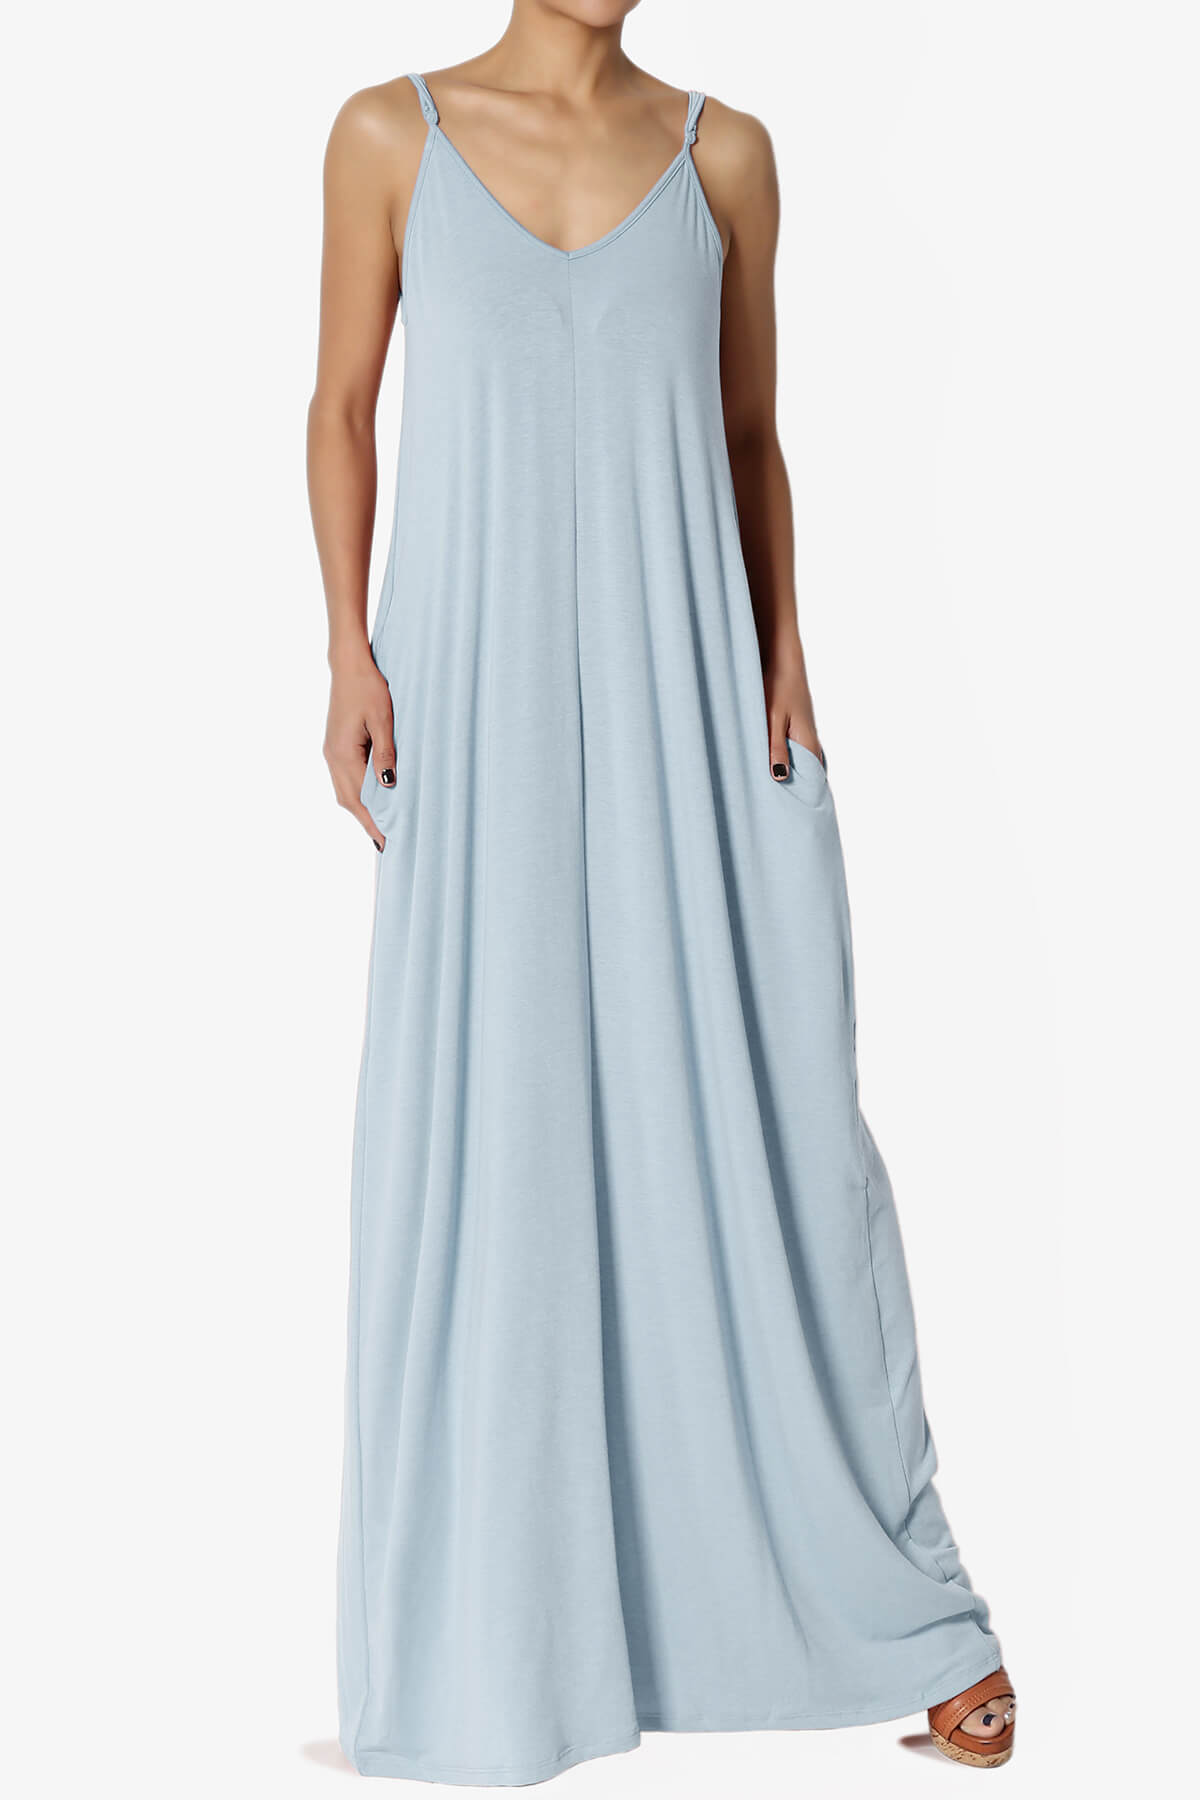 Venus Pocket Cami Maxi Dress ASH BLUE_1